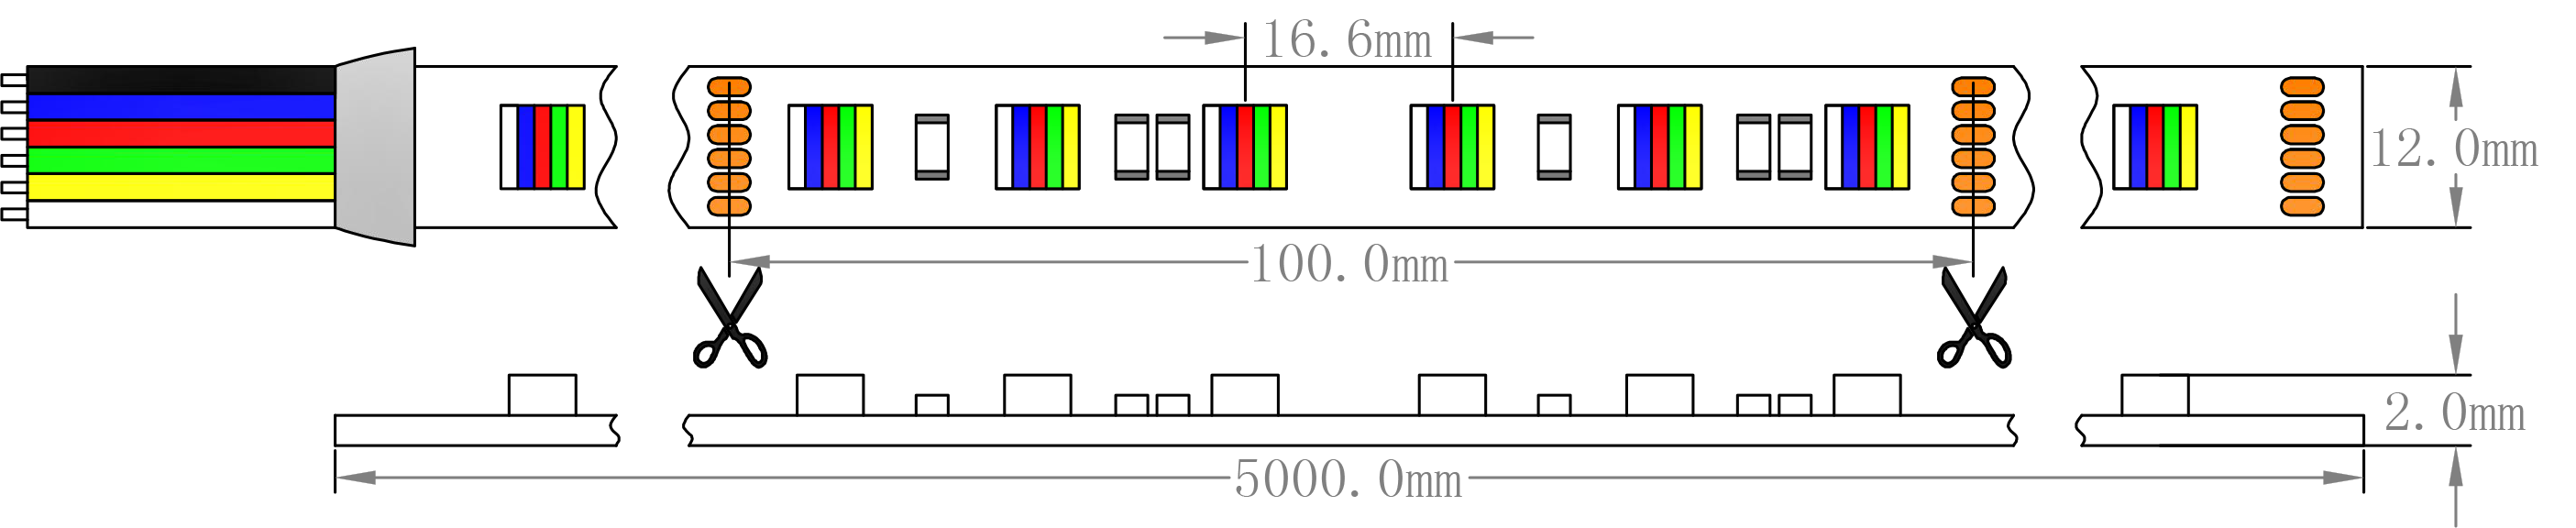 RGBVW LED Strip Light Dimension